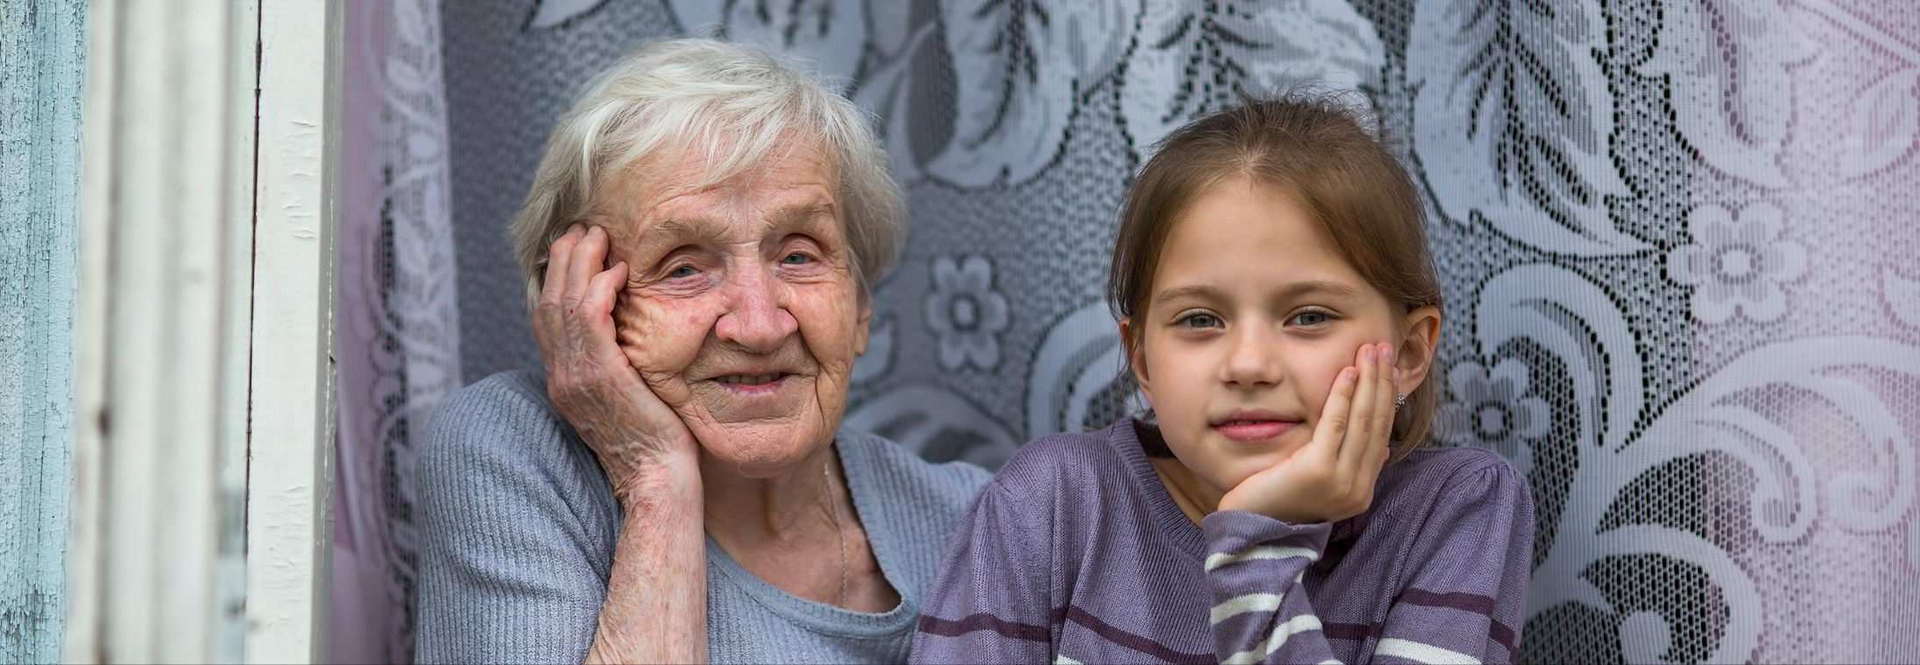 Frau mit Demenz und ihre Enkelin